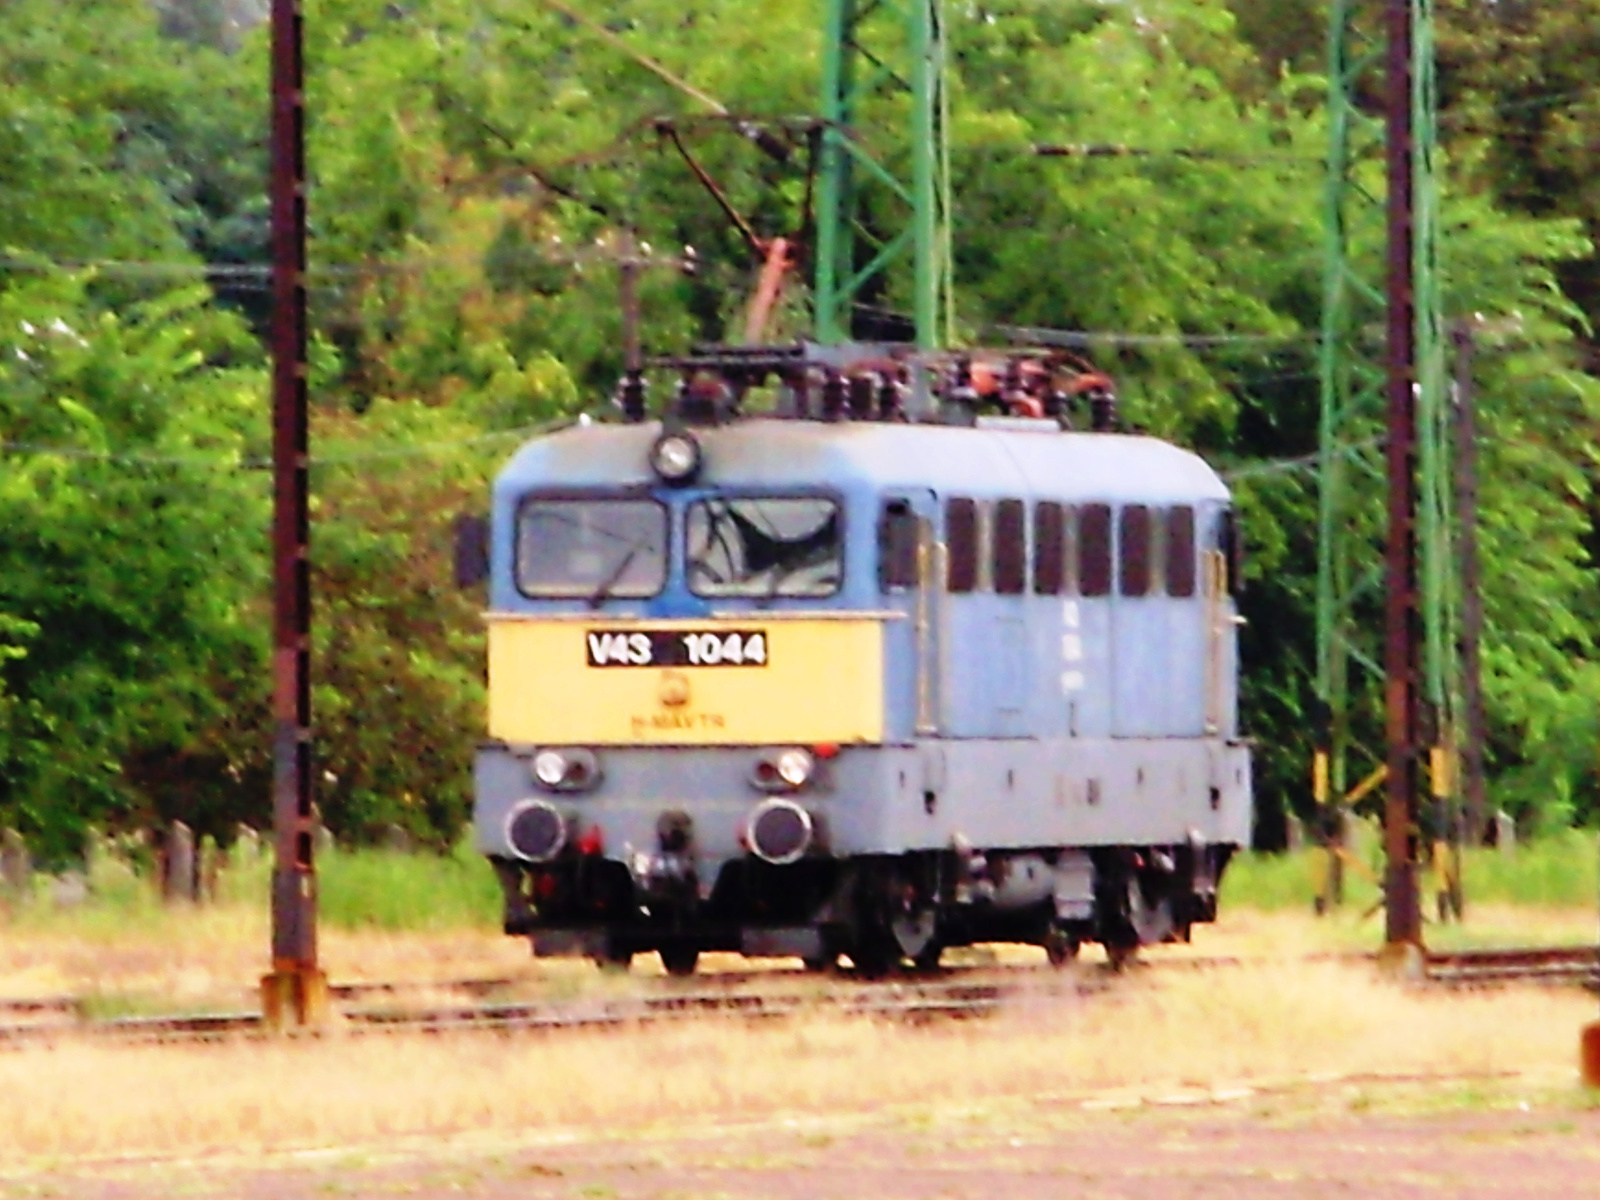 V43-1044